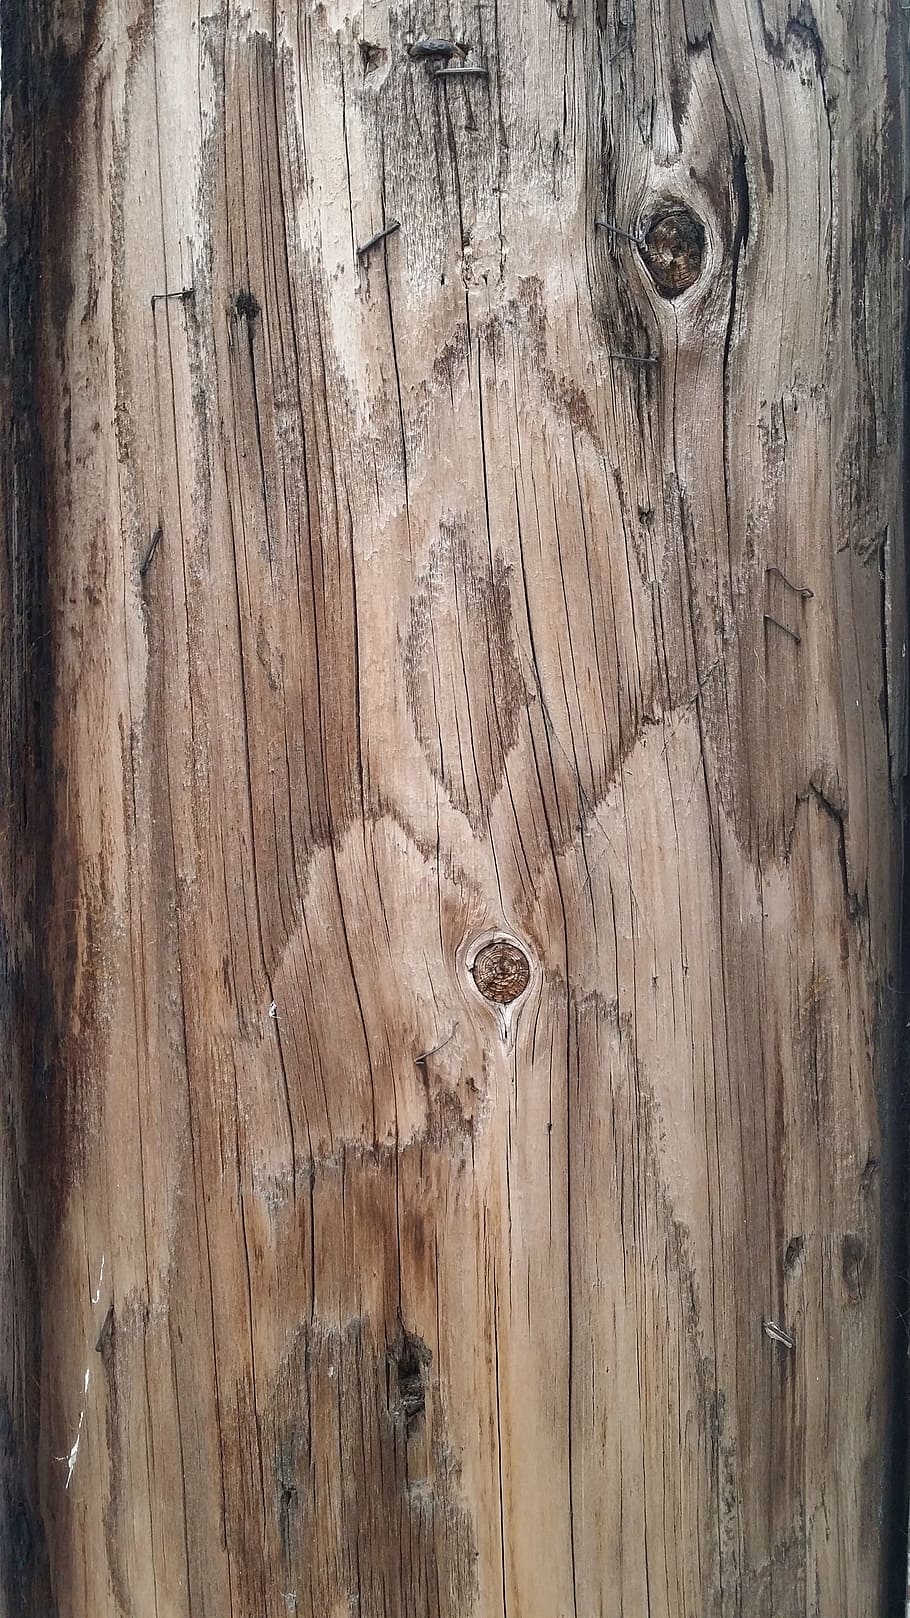 テクスチャ, 木材, 木材のテクスチャ背景, 広葉樹, 木製, 表面, 素材, ボード, 板, ラフ